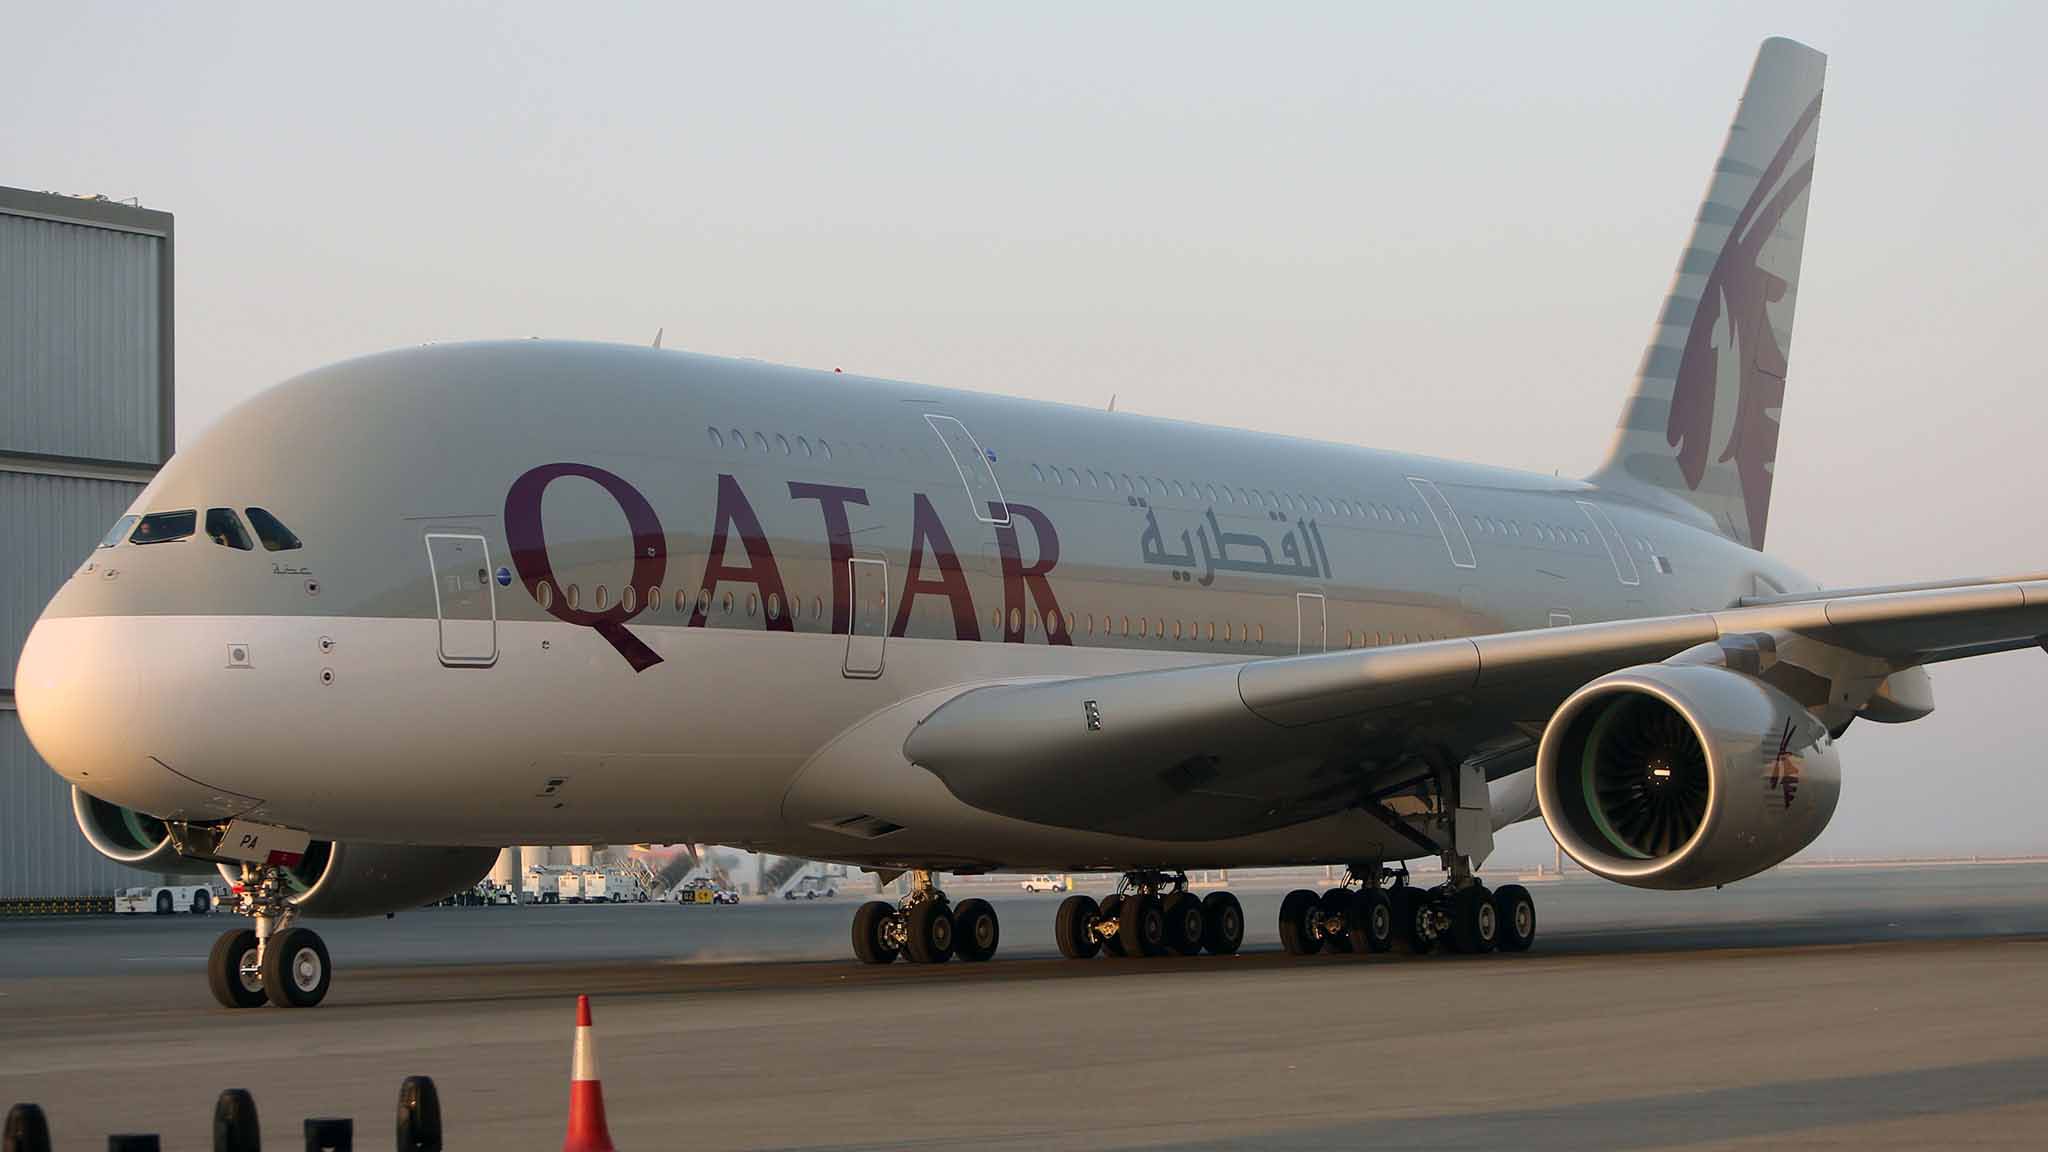 La medida se aplicará a todos los vuelos de la aerolínea que partan desde el aeropuerto internacional Hamad con destino a EEUU